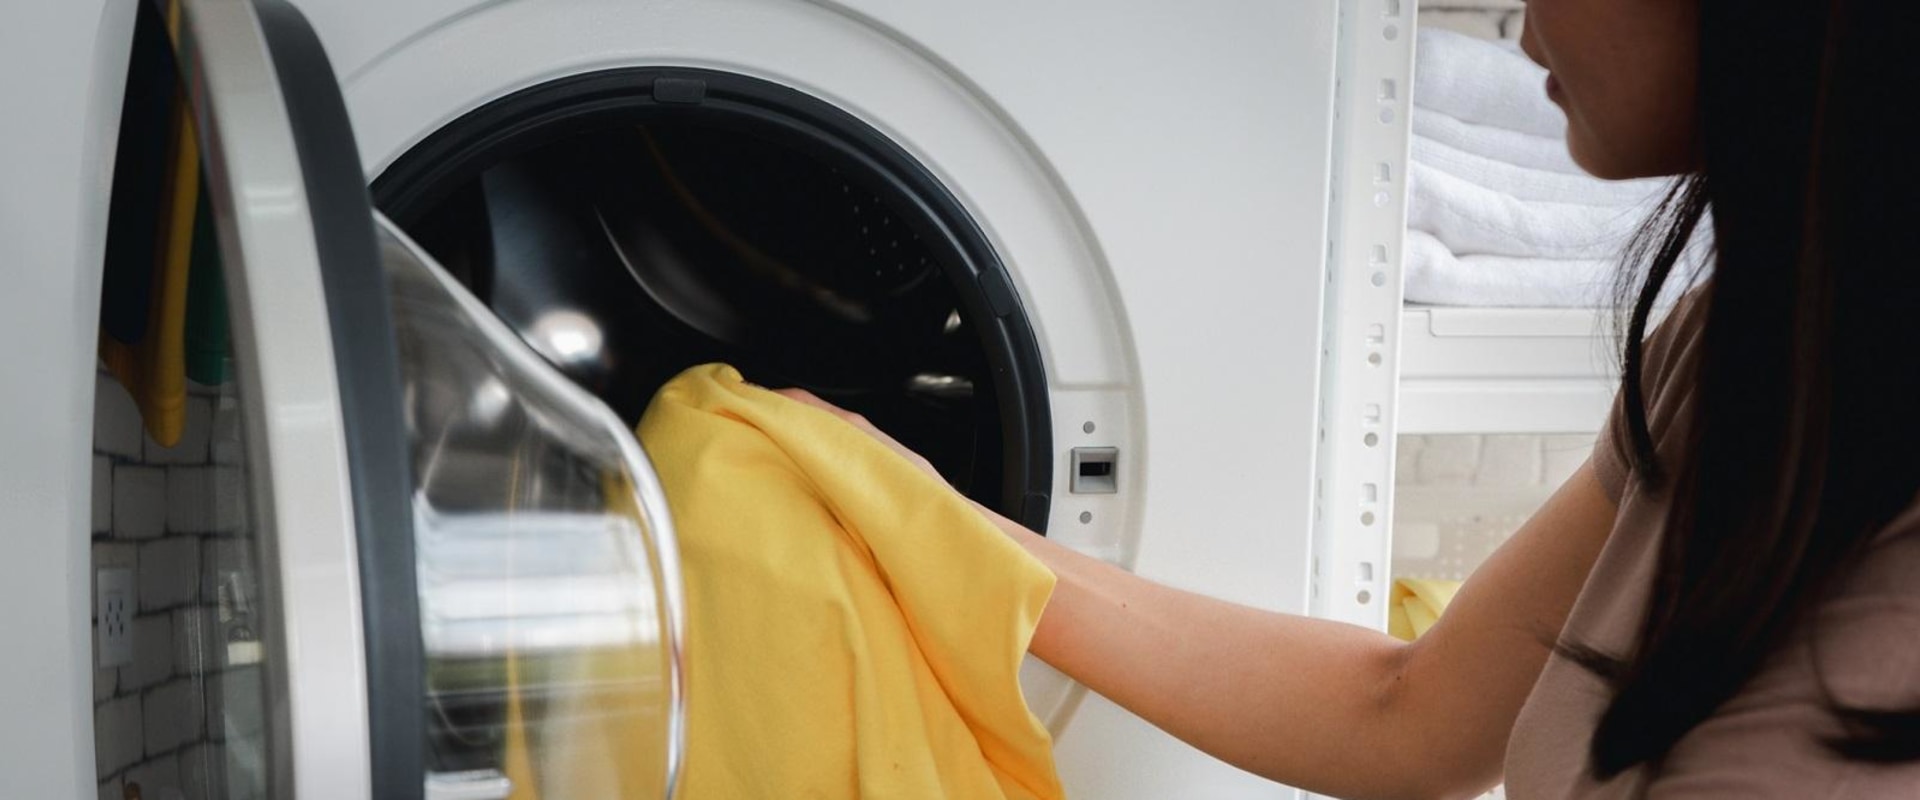 Welche Waschmaschine ist die beste und langlebigste?